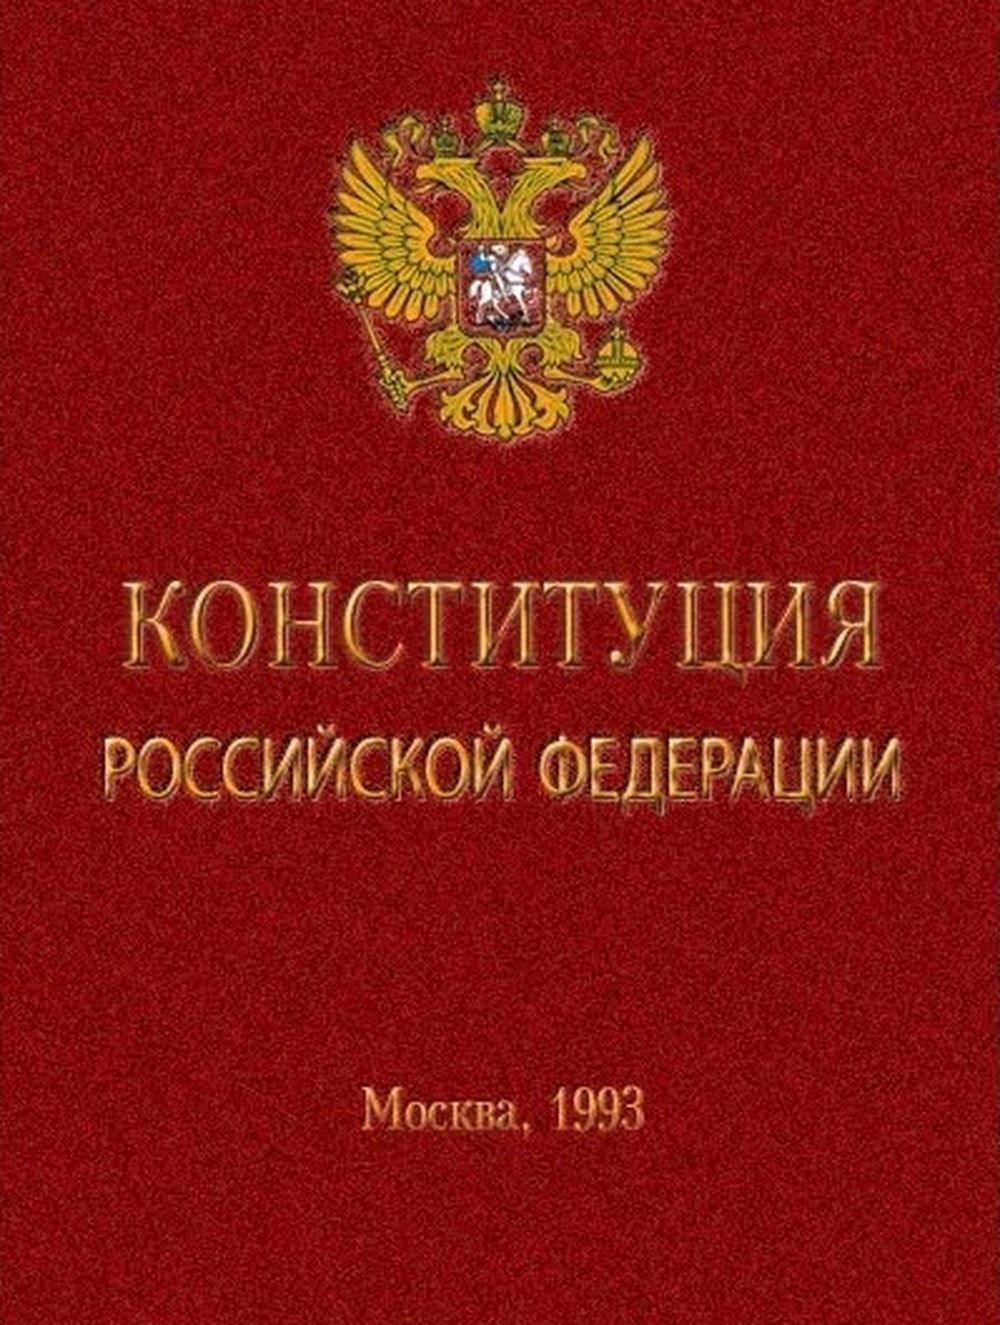 Москва основной закон